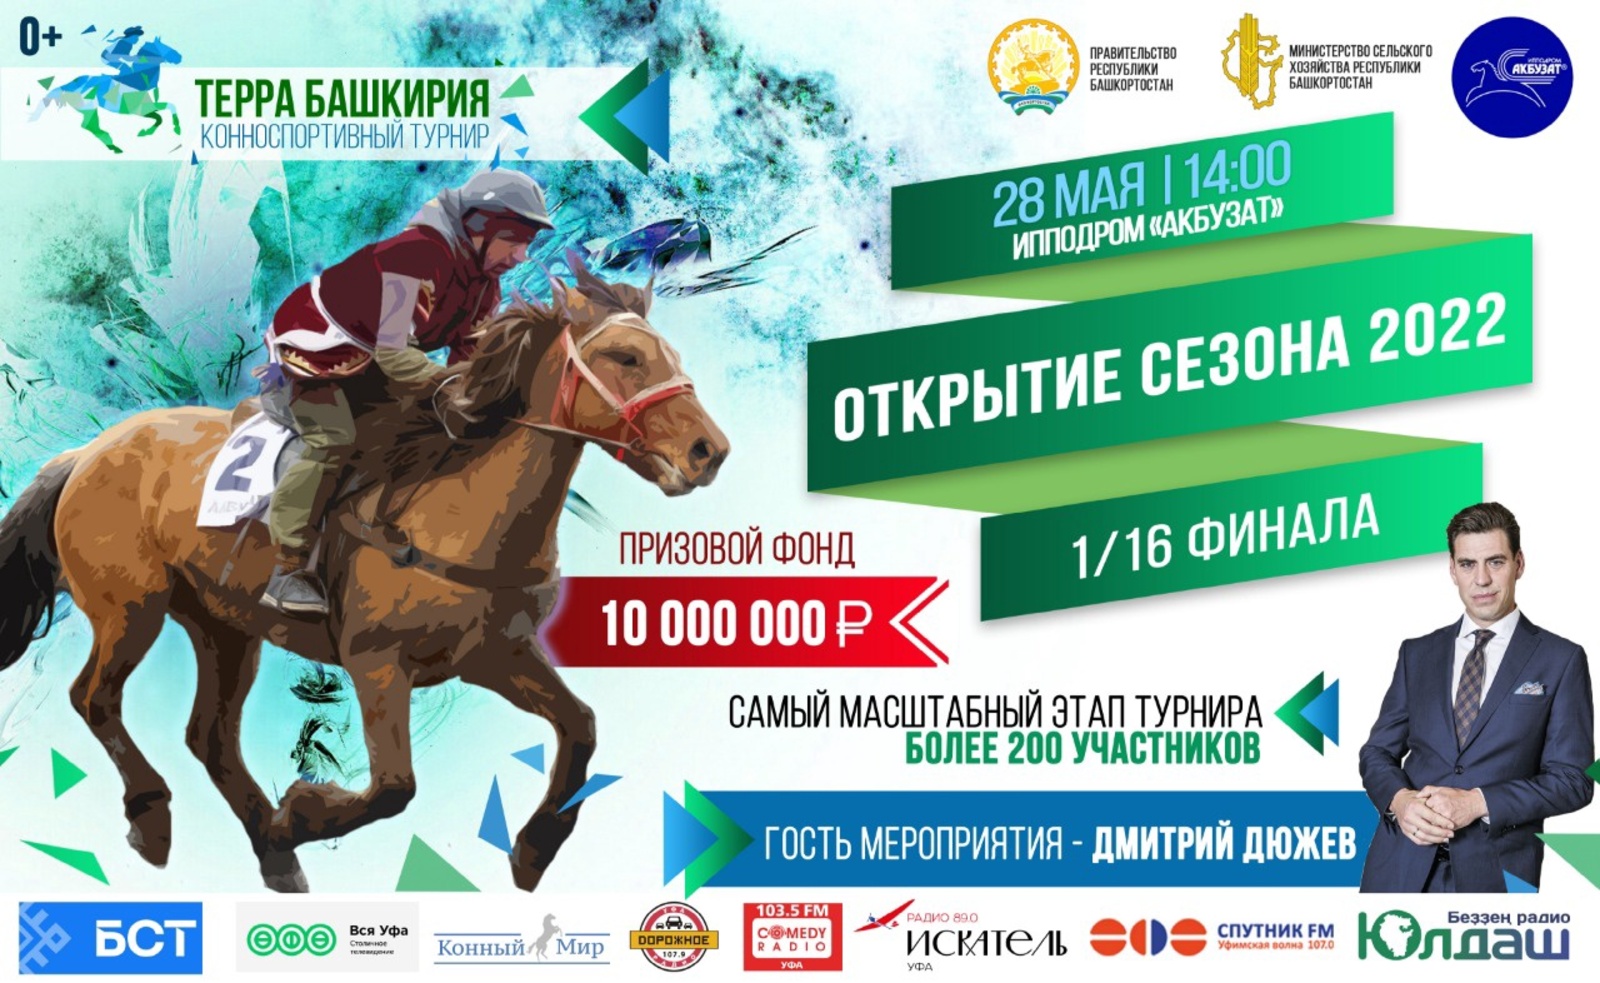 Призовой фонд конноспортивного турнира «Терра Башкирия» в 2022 году составит 10 млн рублей